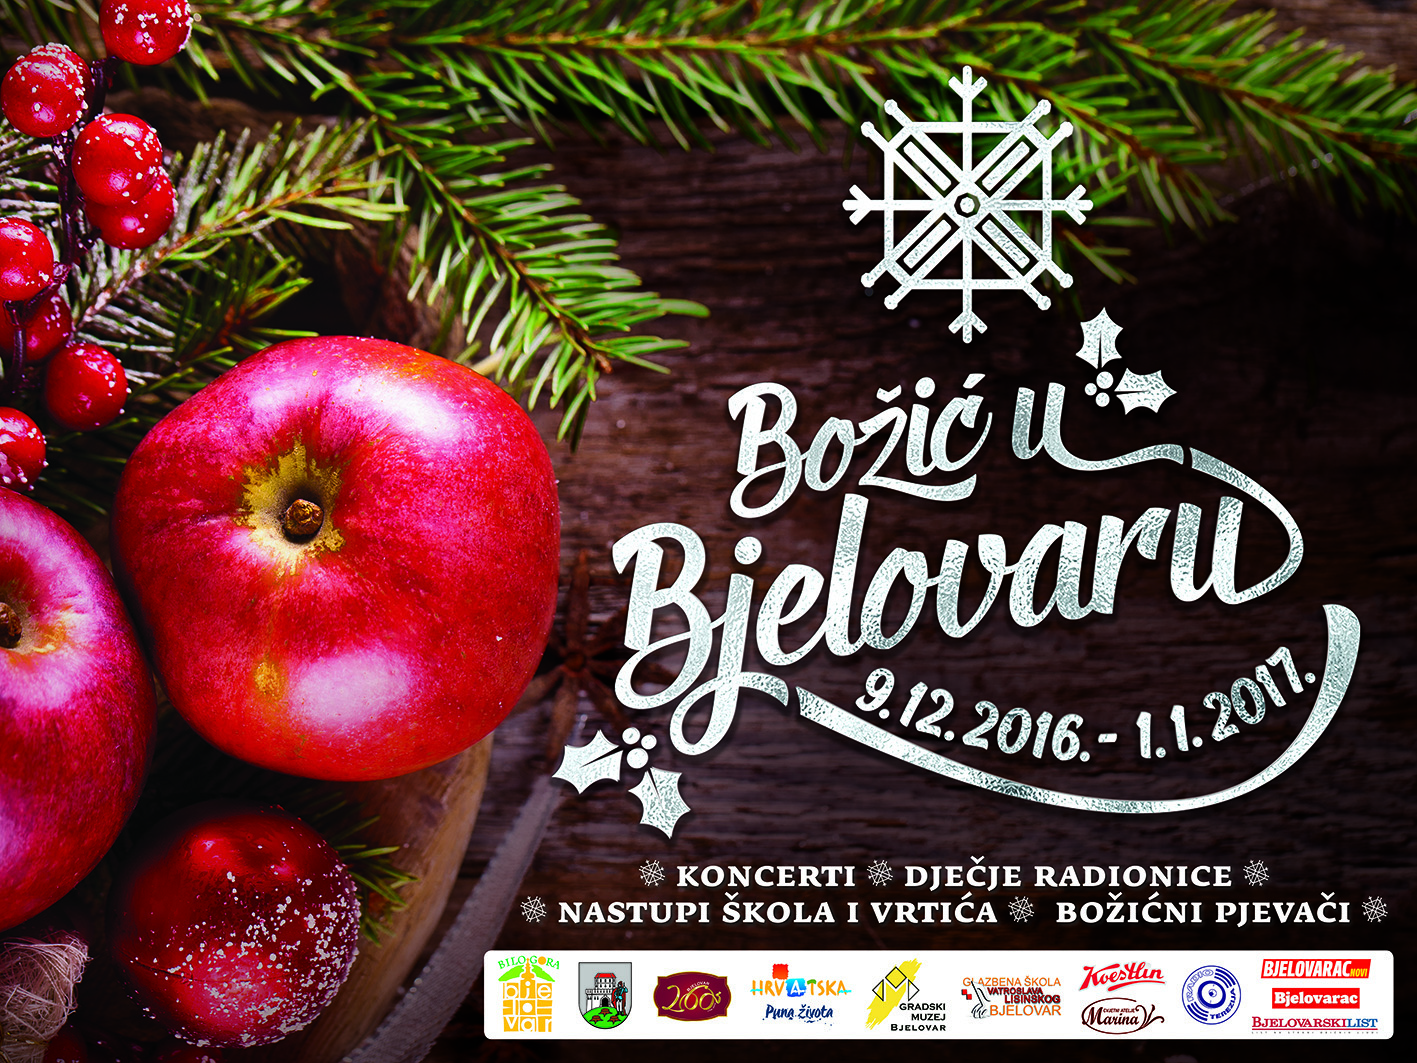 Božić u Bjelovaru 2016.